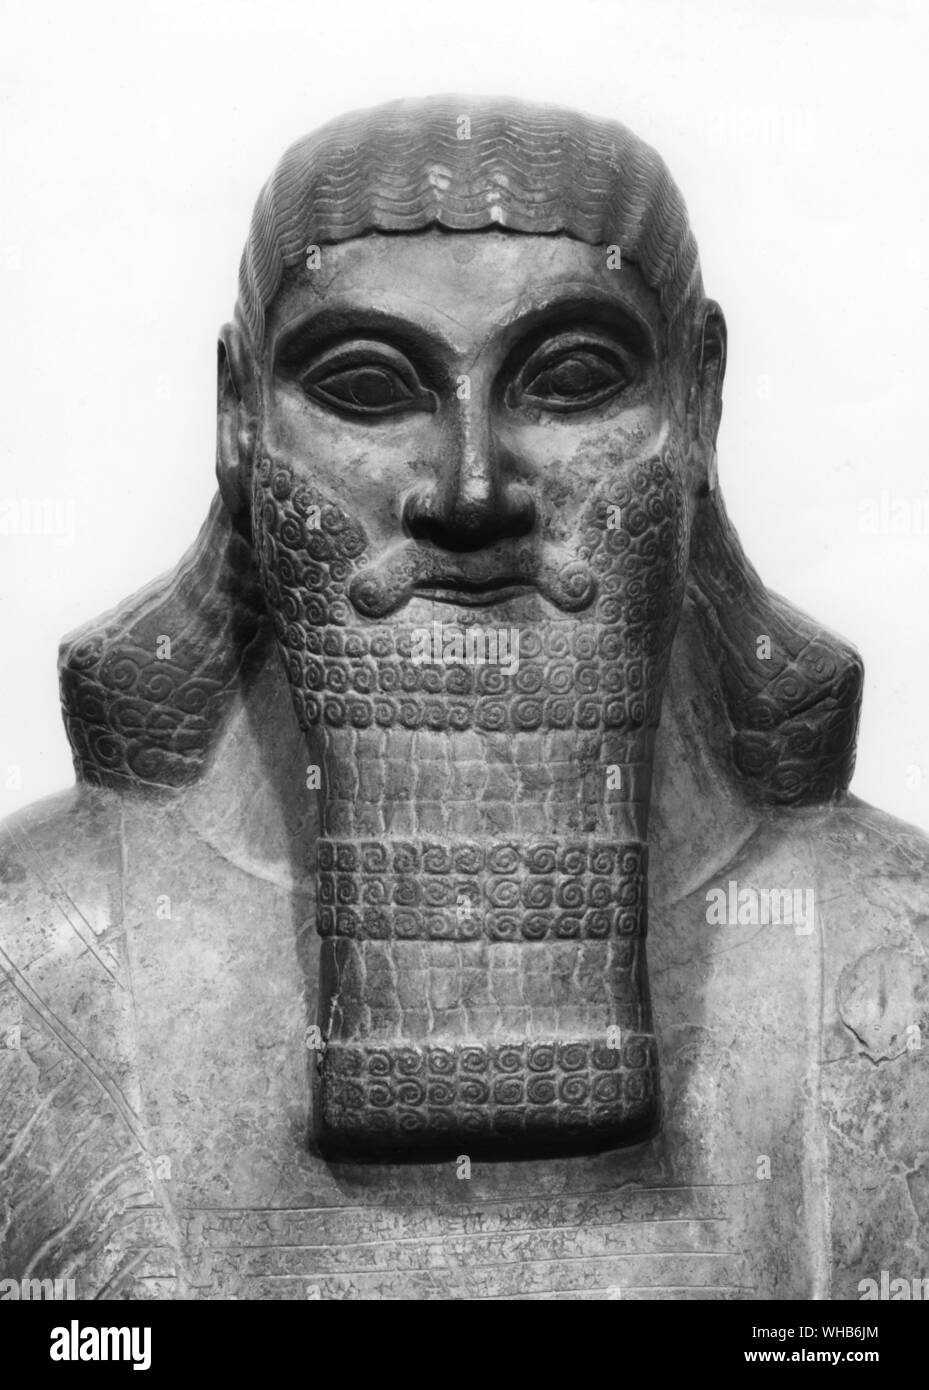 Statue von ASSURNASIRPAL II (AD 884-859) von Nimrud.. Ashur-Nasir-pal II (transliteration Ashshur-nâsir-Apli, d.h. Ashur ist Wächter des Erben) war König von Assyrien von 884 v. Chr.-859 v. Chr... Nimrud ist ein alten assyrischen Stadt südlich von Ninive am Fluss Tigris.. Stockfoto